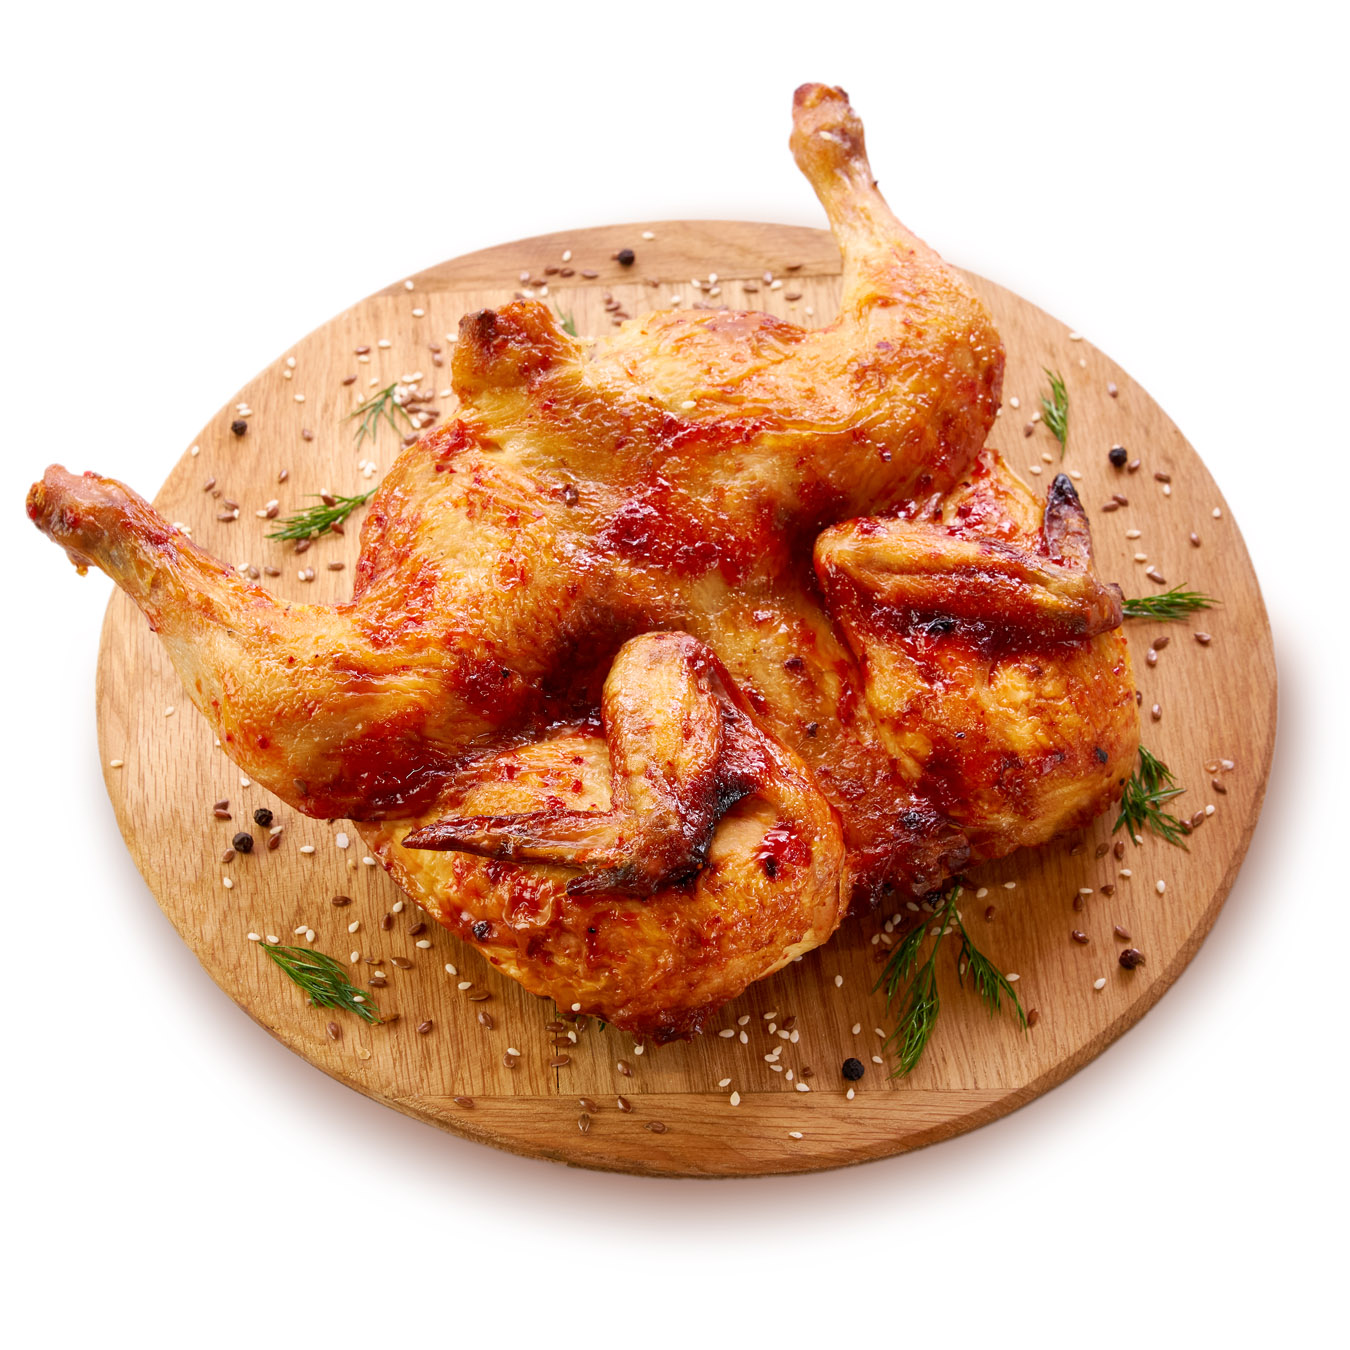 Grilled chicken in a marinade of piri-piri